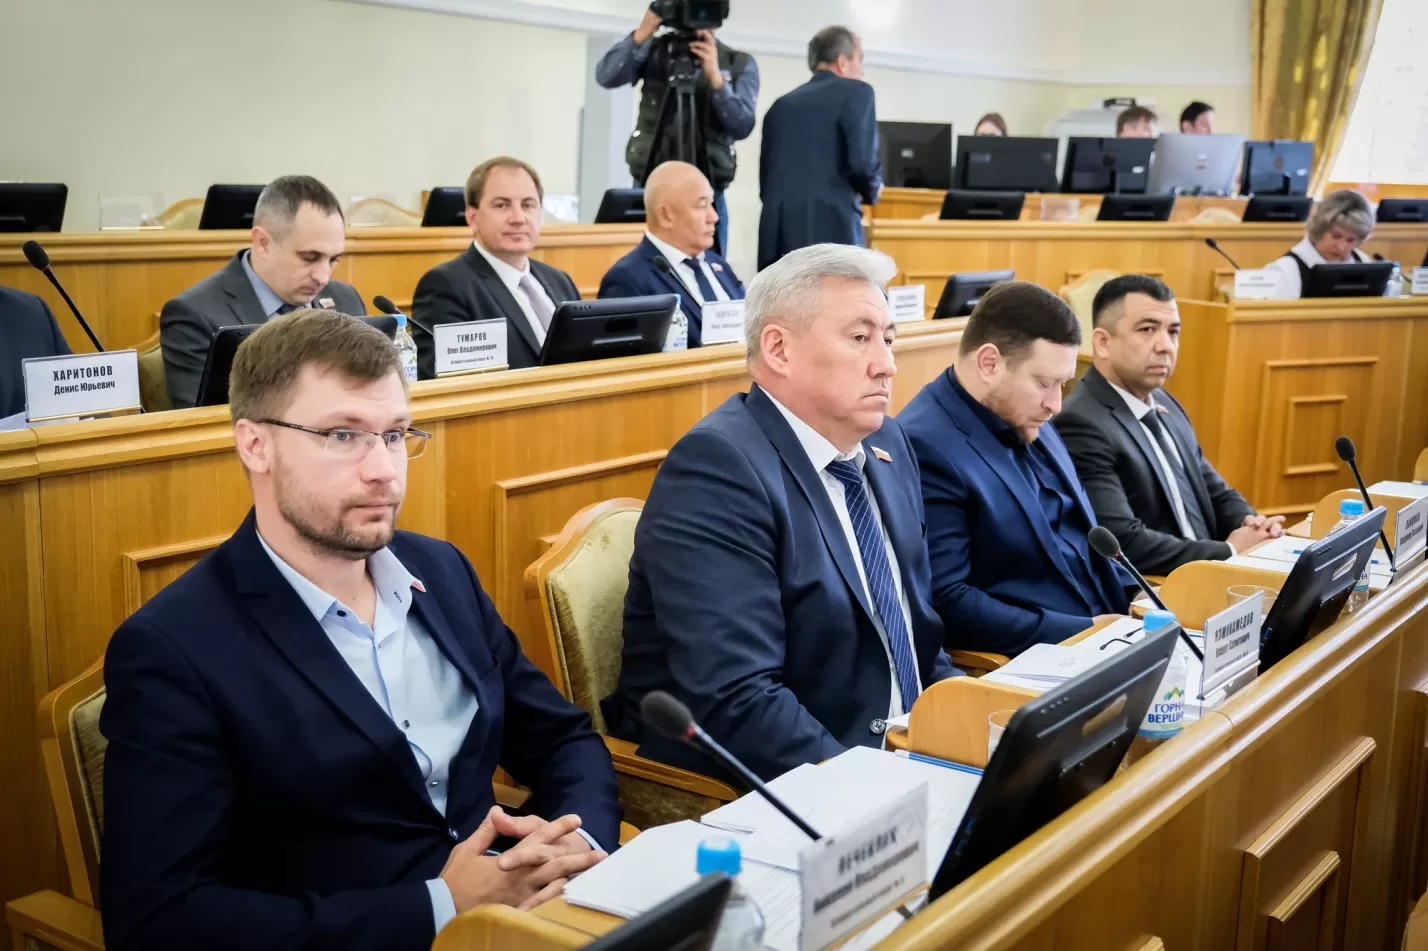 Астраханские чиновники и депутаты будут обязаны сообщать о попытках склонения их к коррупции